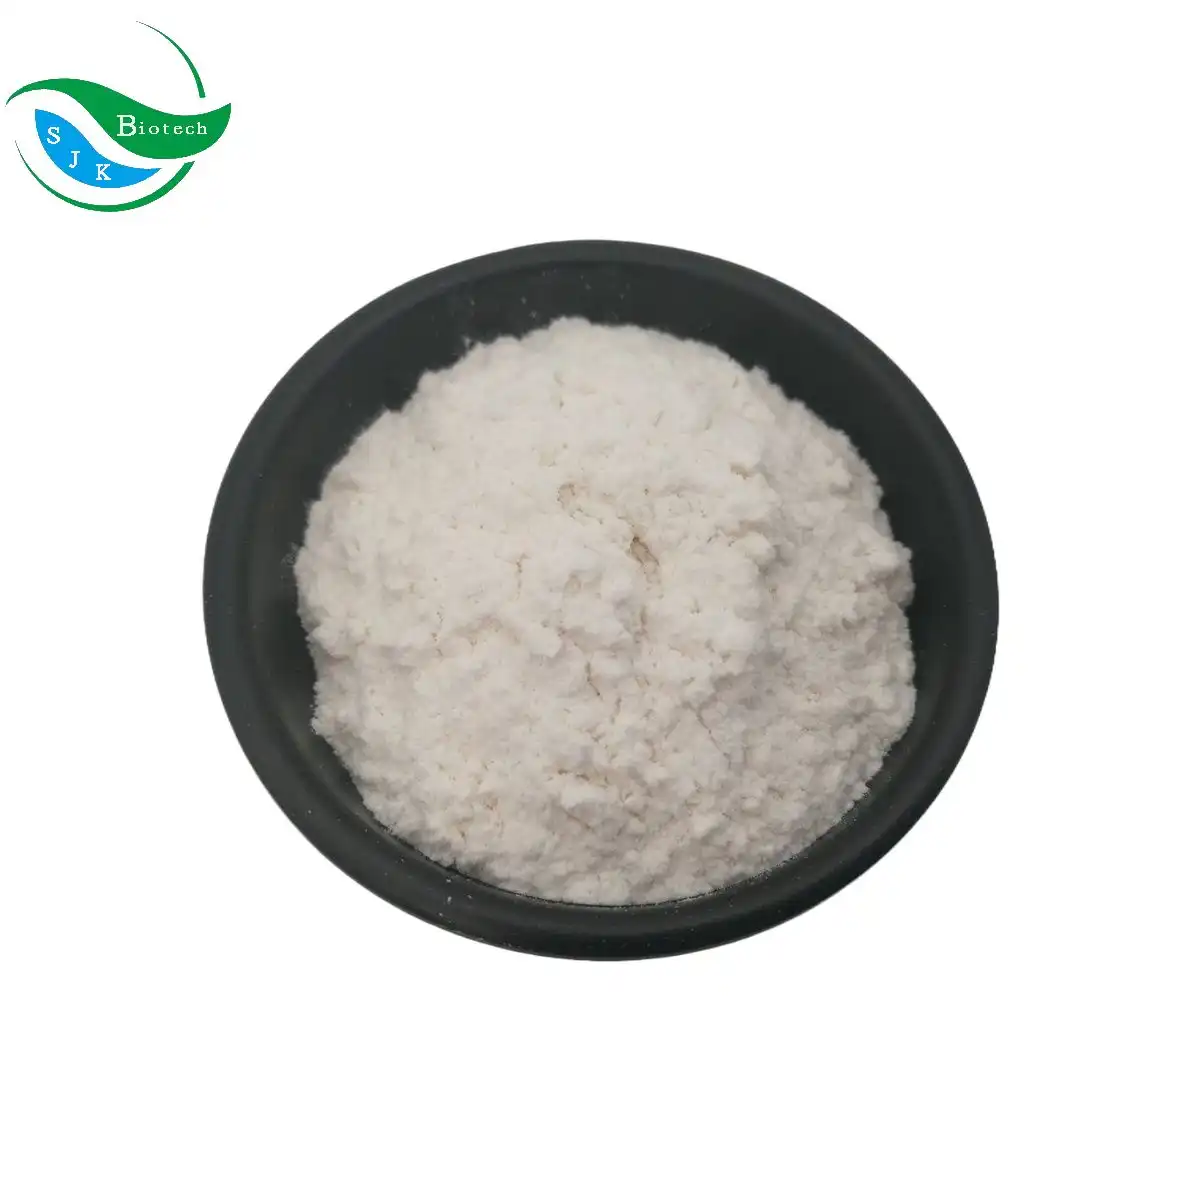 オメガ3粉末ドコサヘキサエン酸藻類10% CWSDHA粉末食品グレード用